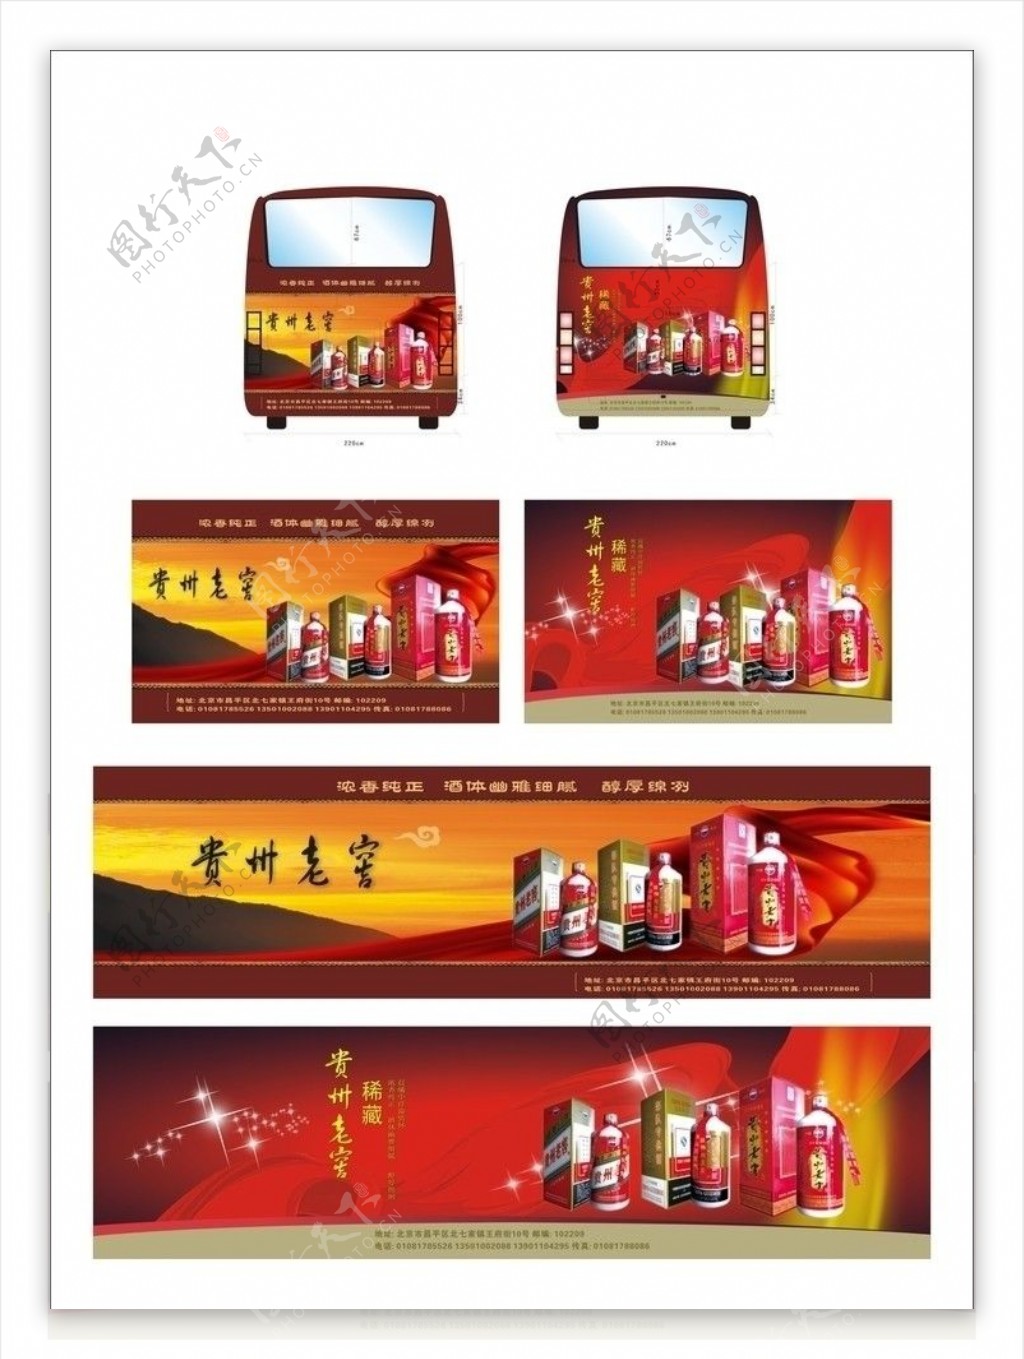 贵州老窖车贴广告展板设计图片